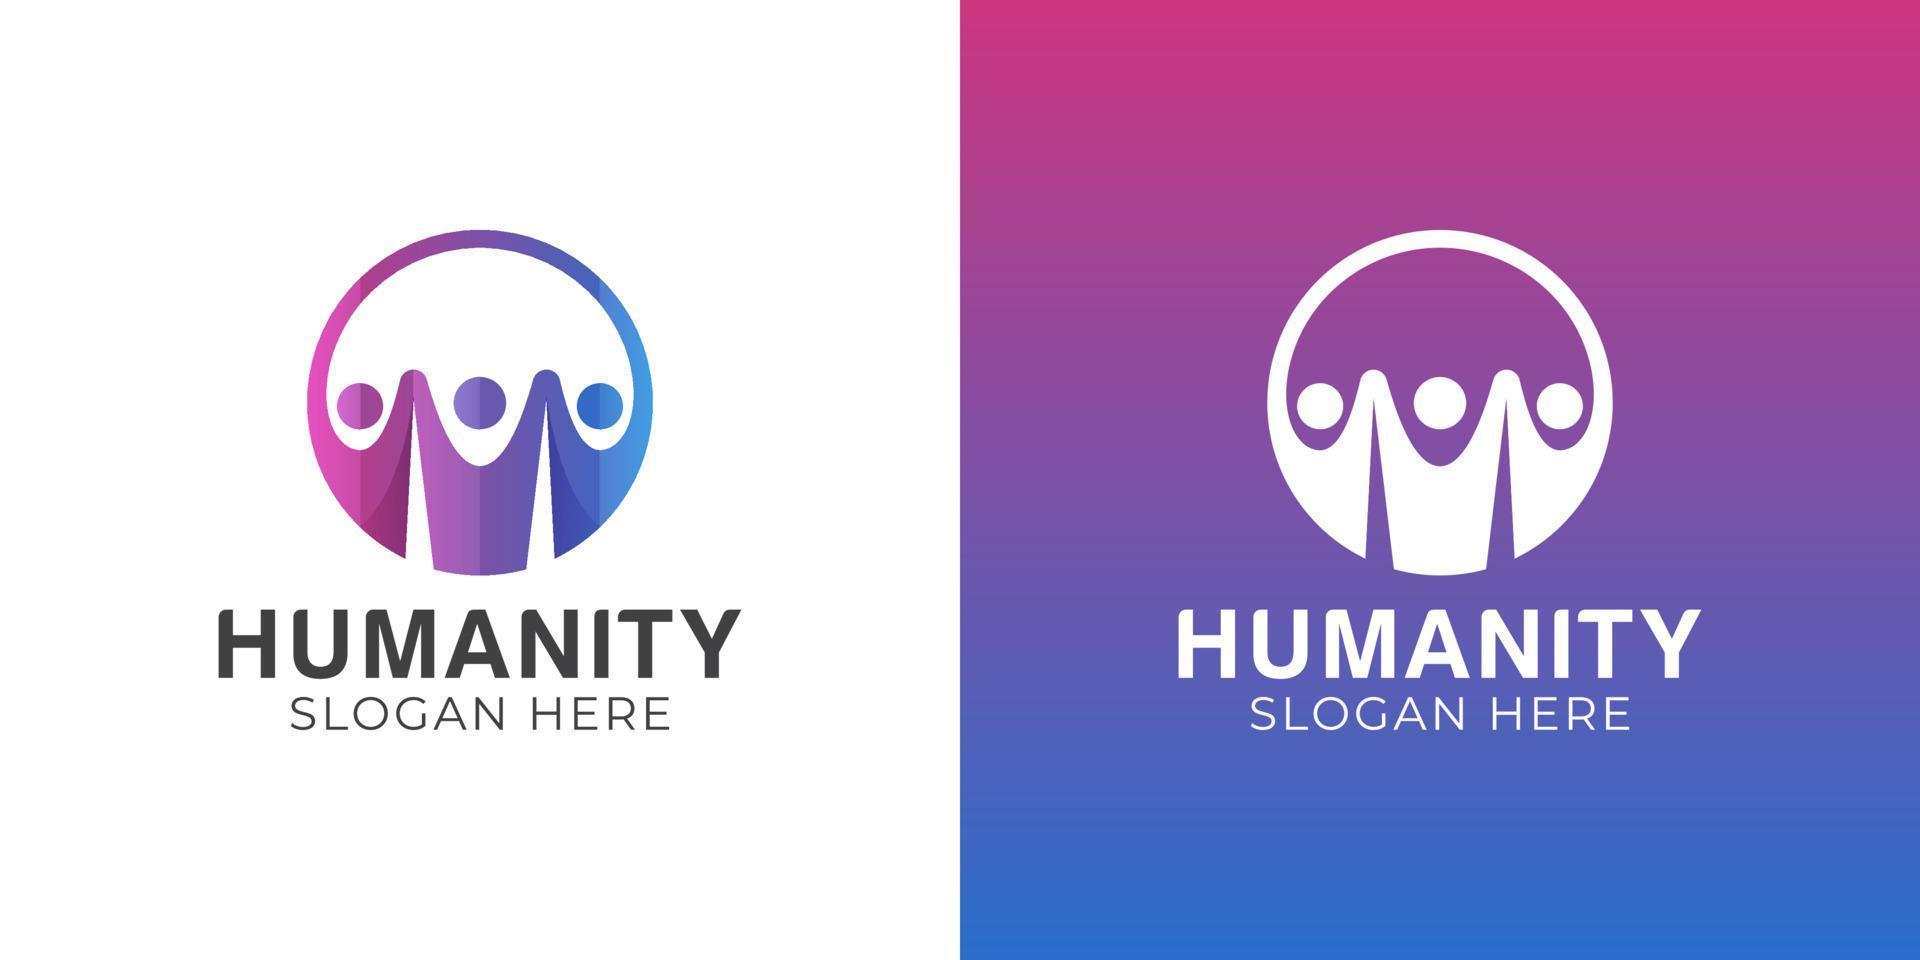 gemeinschafts- oder gruppenmenschen glücklicher geschäftserfolg, menschen familie zusammen menschliche einheit logo design vektor